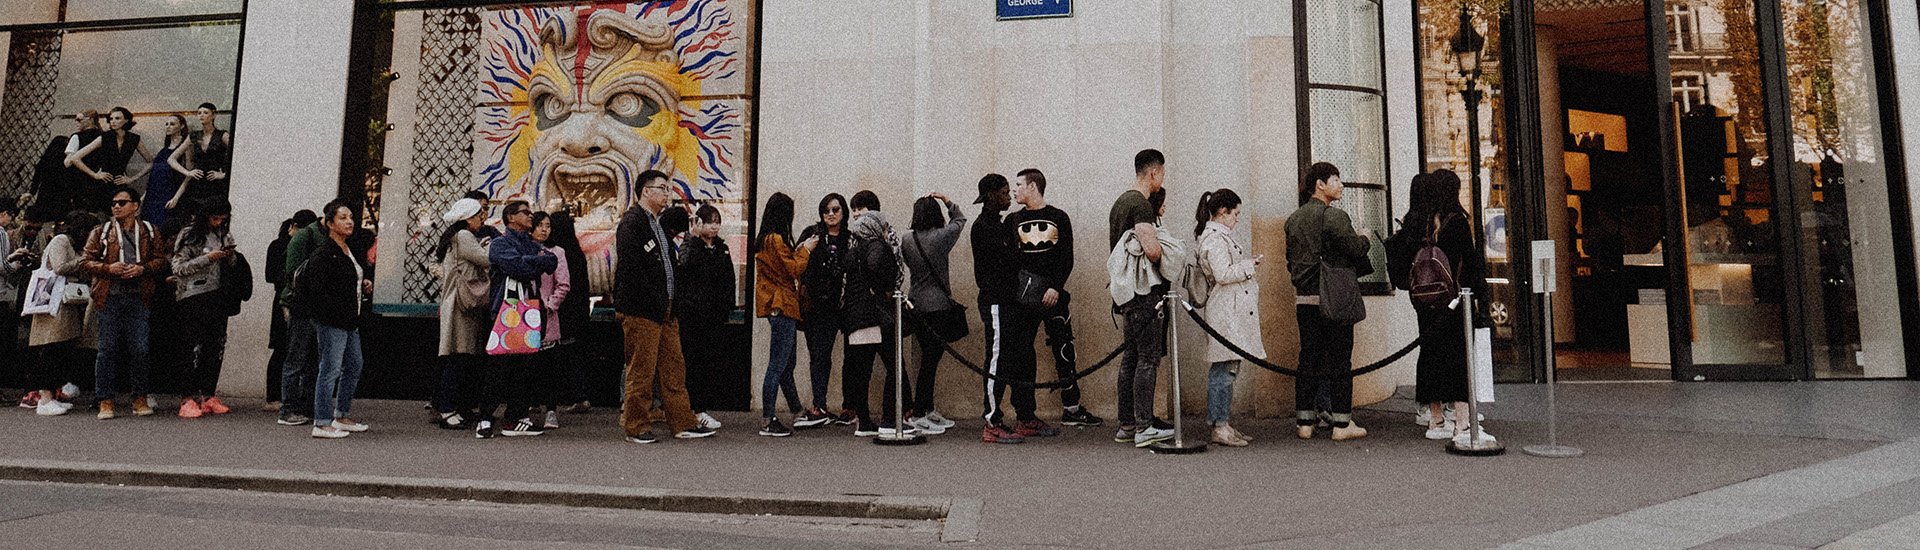 line-of-people-queue